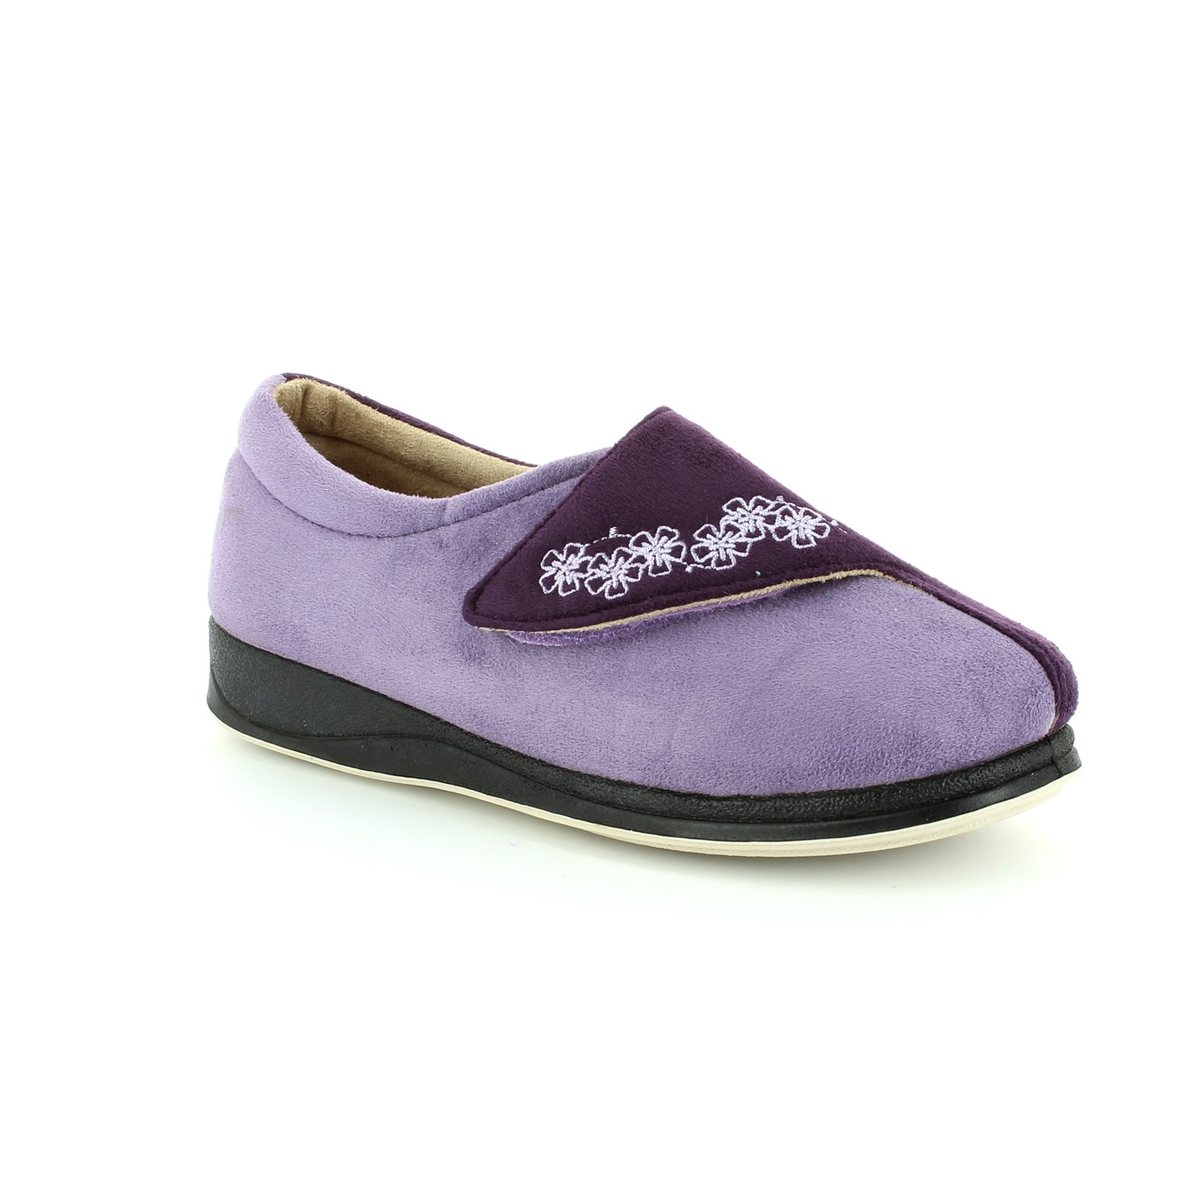 Padders Hug Purple multi Womens slippers 424N-78 in a Plain Microsuede in Size 7